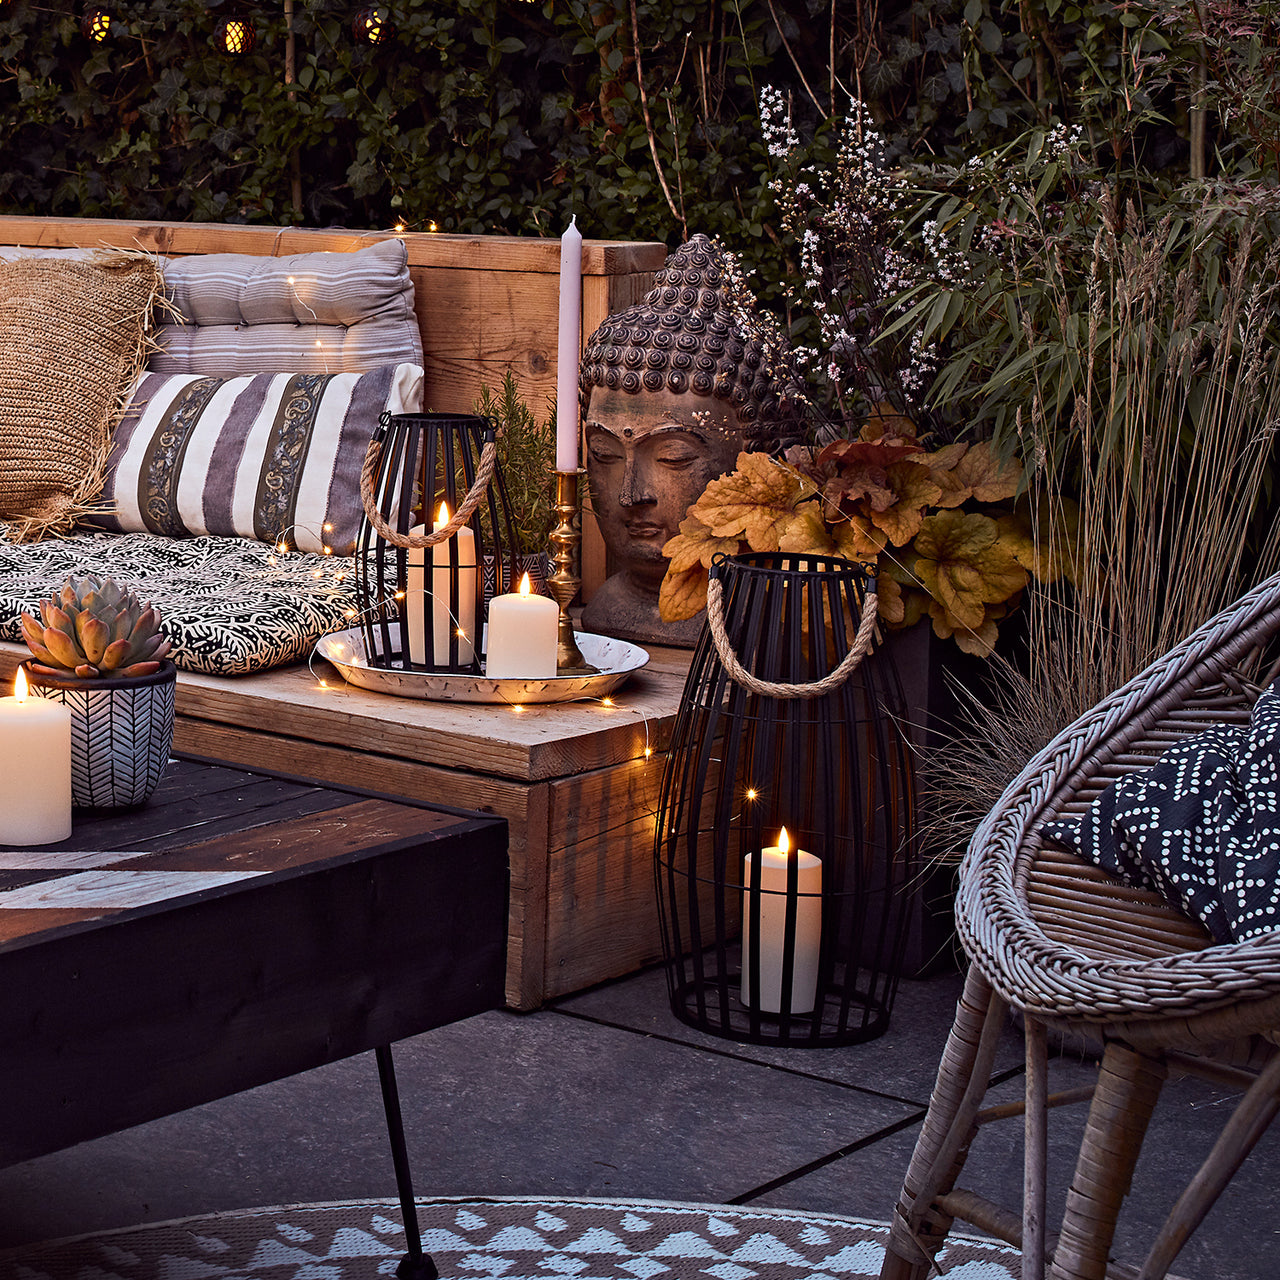 Terrasse mit gemütlicher Leuchtdeko und Sitzbank mit Kissen, Kerze und Pflanzen.